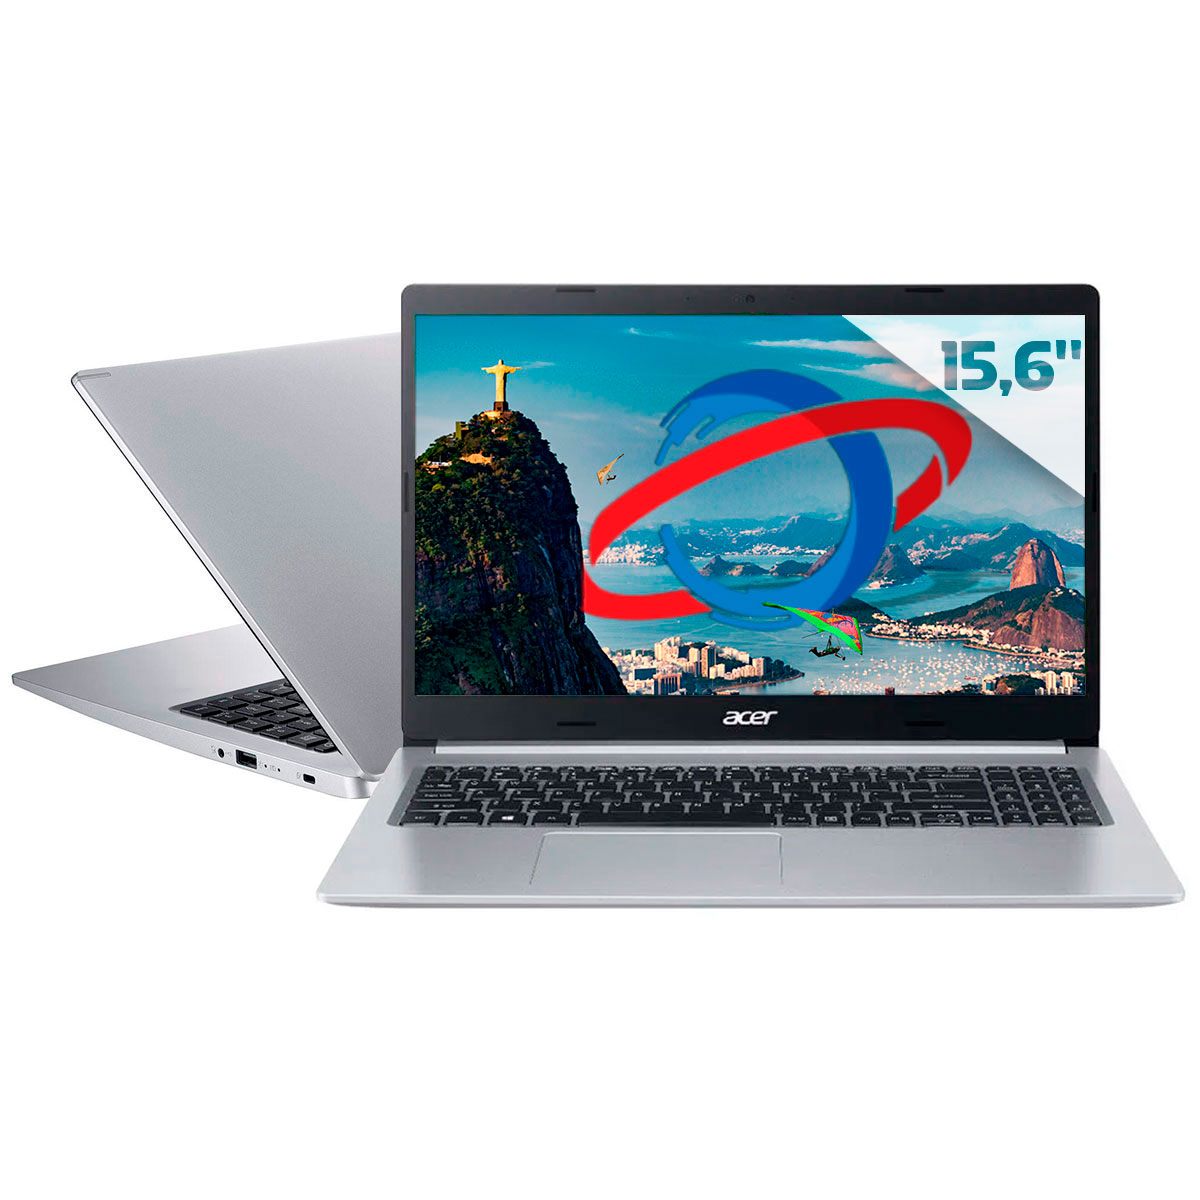 Notebook Acer Aspire A515-54-57EN - Intel i5 1035G1, RAM 12GB, SSD 256GB, Tela 15.6